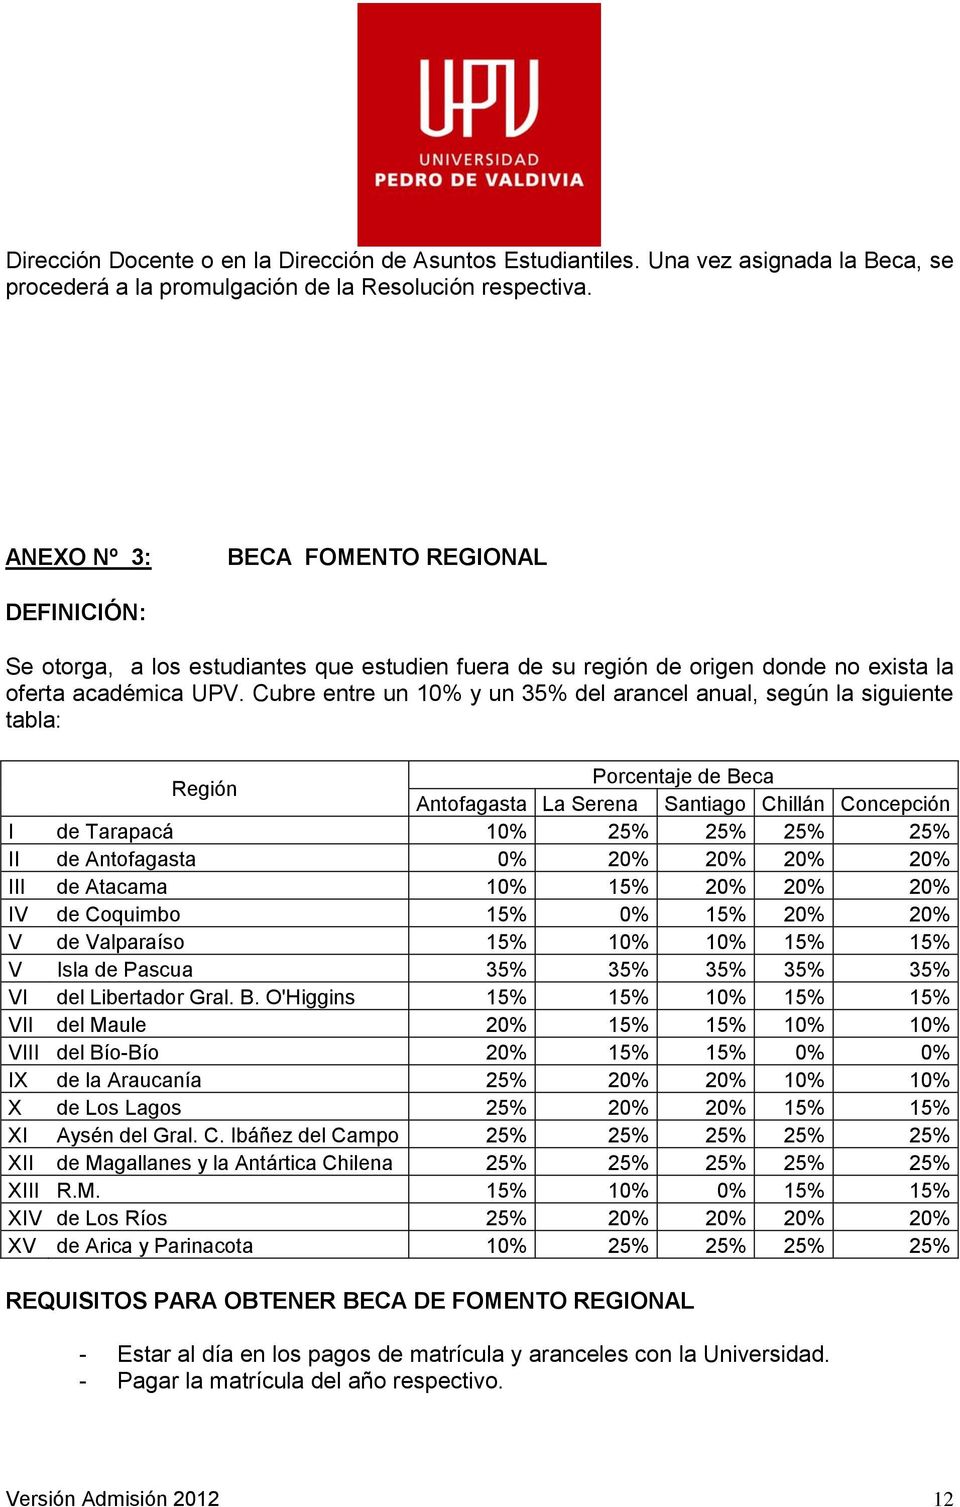 Cubre entre un 10% y un 35% del arancel anual, según la siguiente tabla: Región Porcentaje de Beca Antofagasta La Serena Santiago Chillán Concepción I de Tarapacá 10% 25% 25% 25% 25% II de